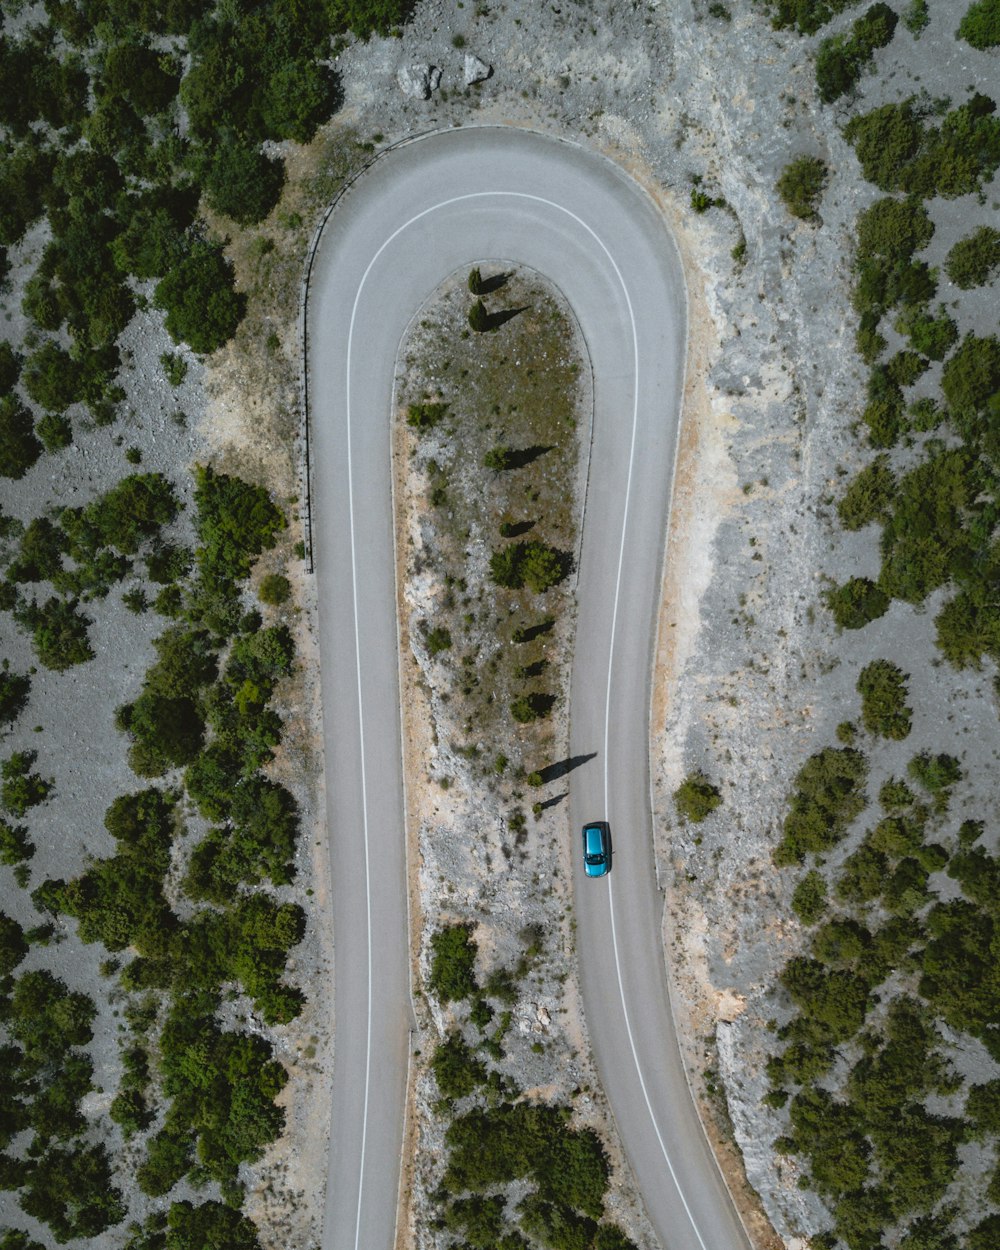 Vista aérea do carro que passa pela estrada cercada por árvores